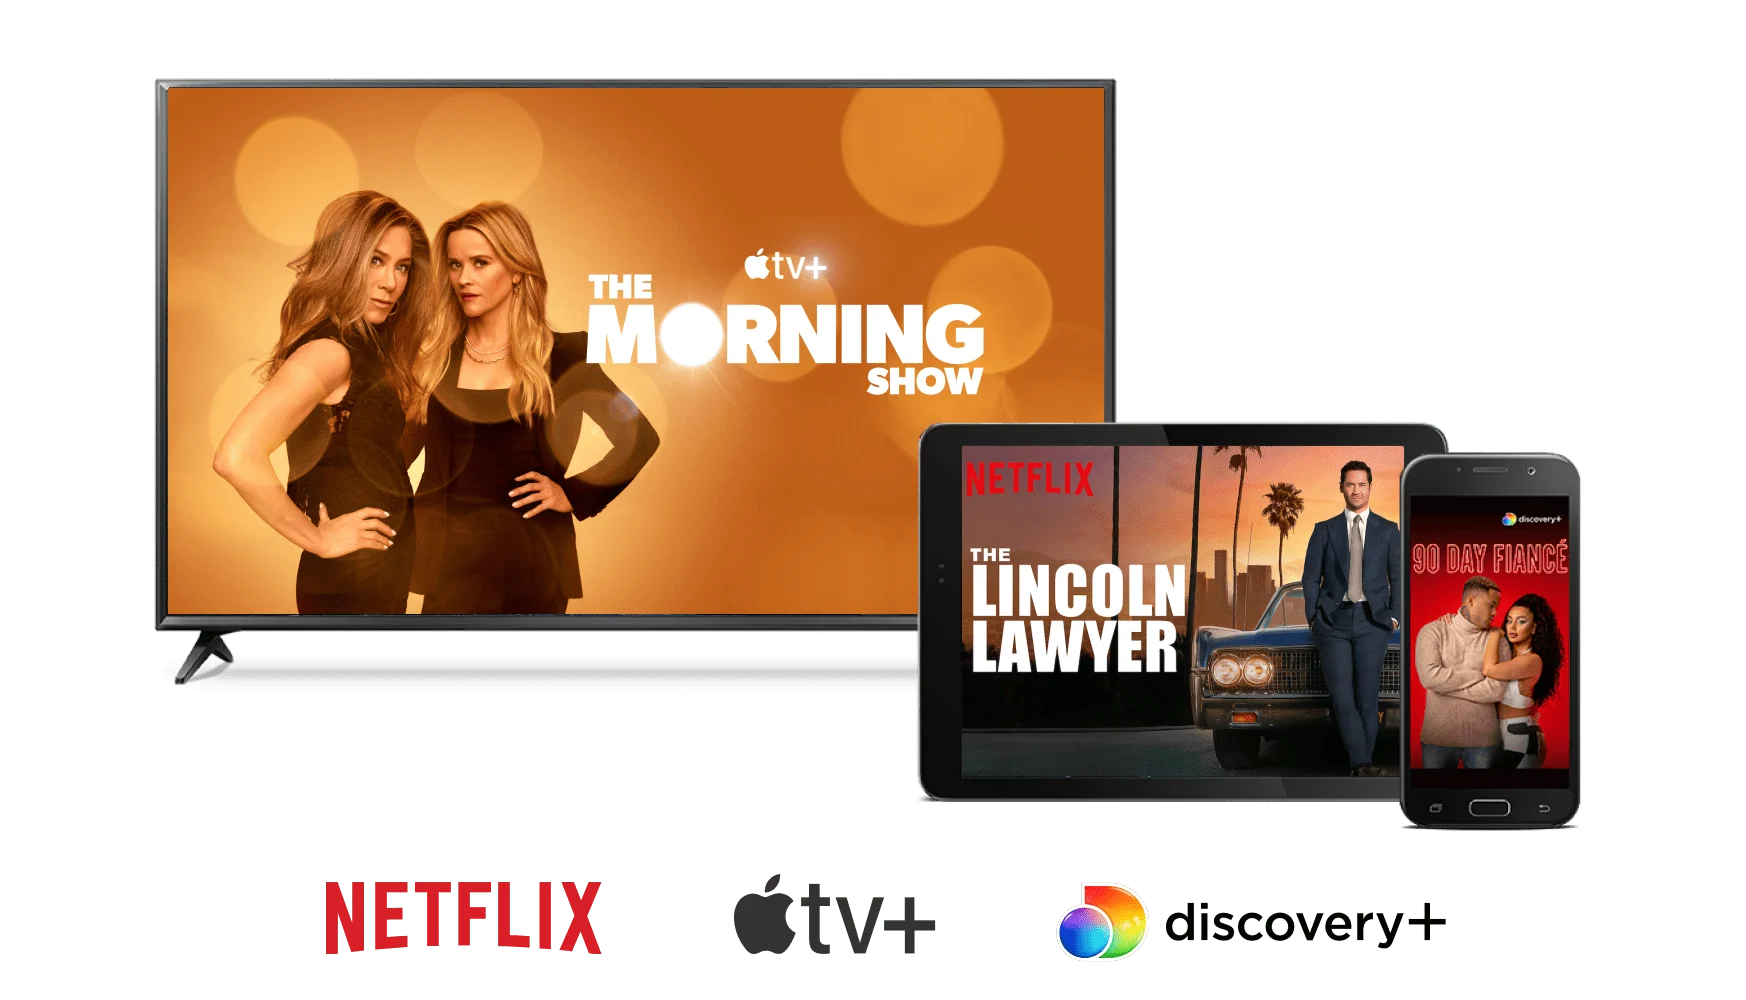 Écrans montrant La matinale, La Défense Lincoln et 90 jours pour se marier. Logos Apple TV+, Netflix et discovery+.